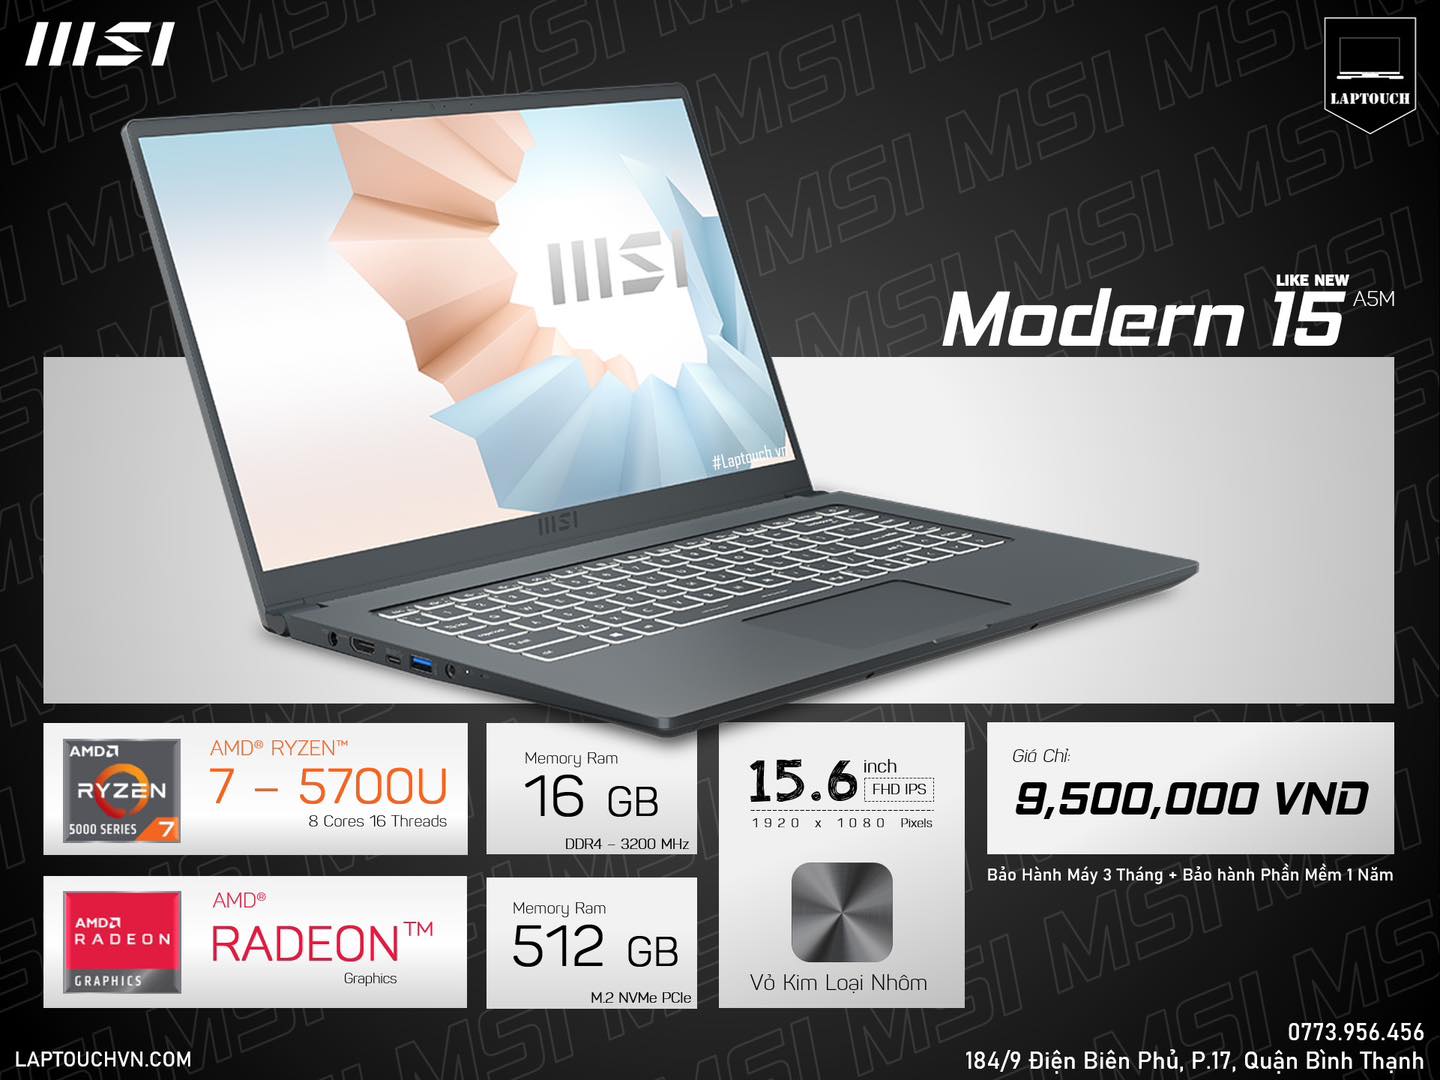 MSI Modern 15 A5M [ Like New ]